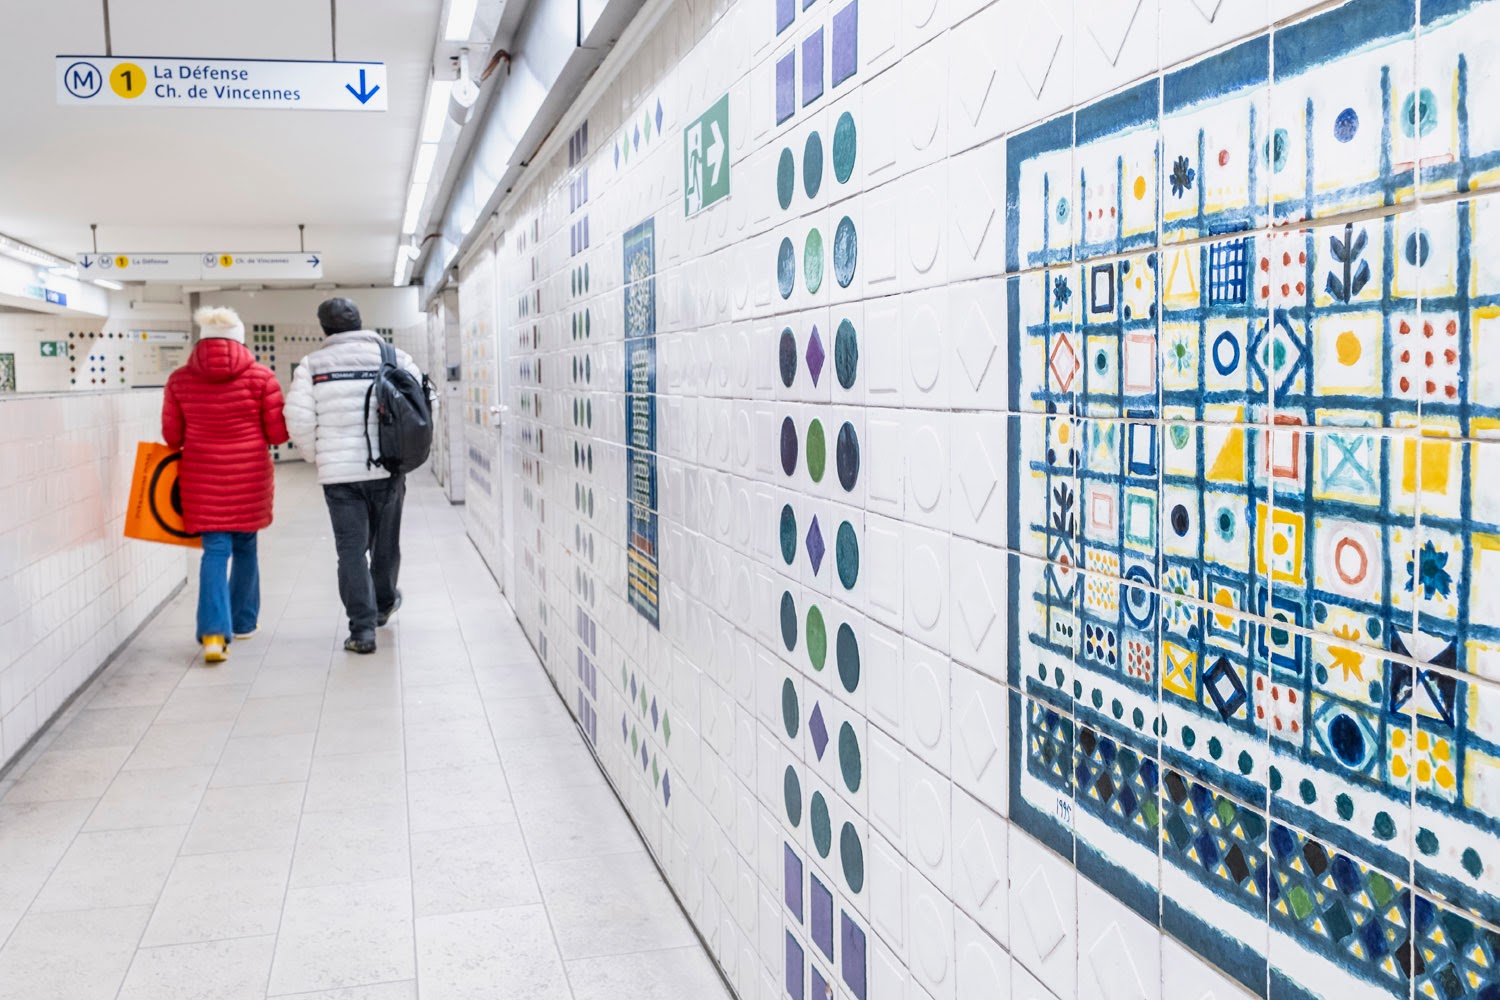 Les azulejos de la Station Champs-Elysées Clemenceau, par l'artiste portugais Manuel Cargaleiro